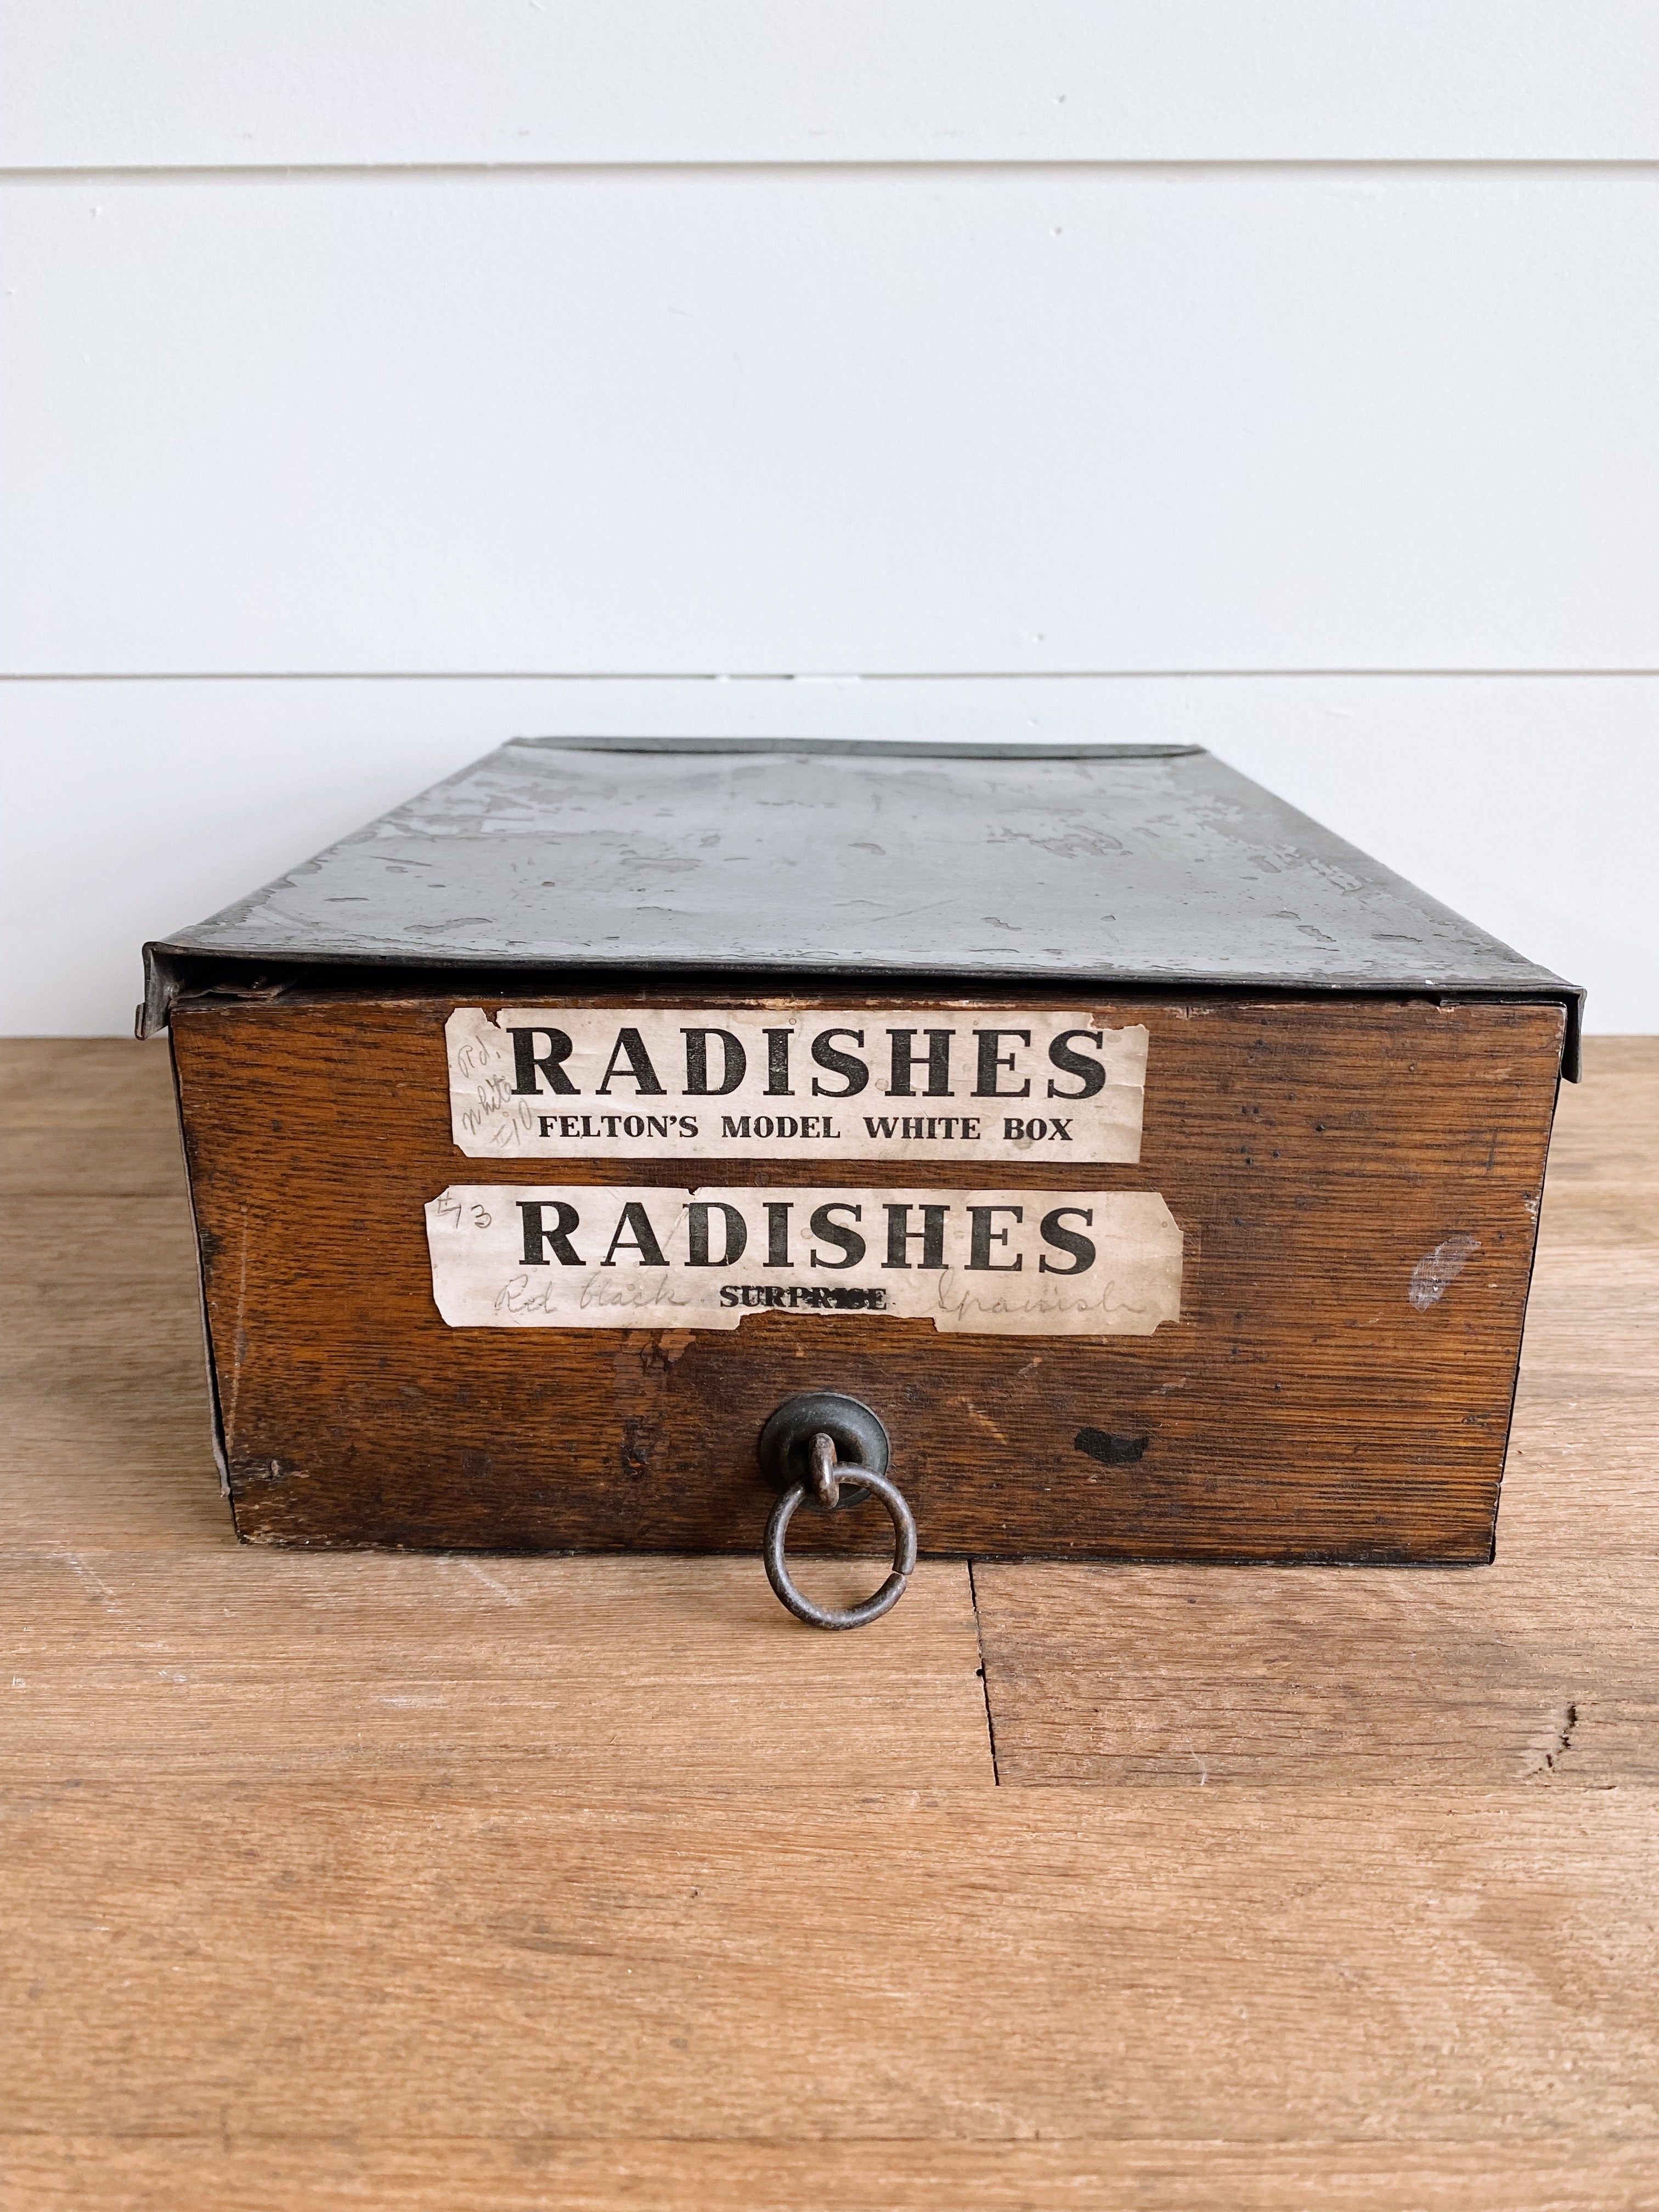 Vintage Radish Seed Box